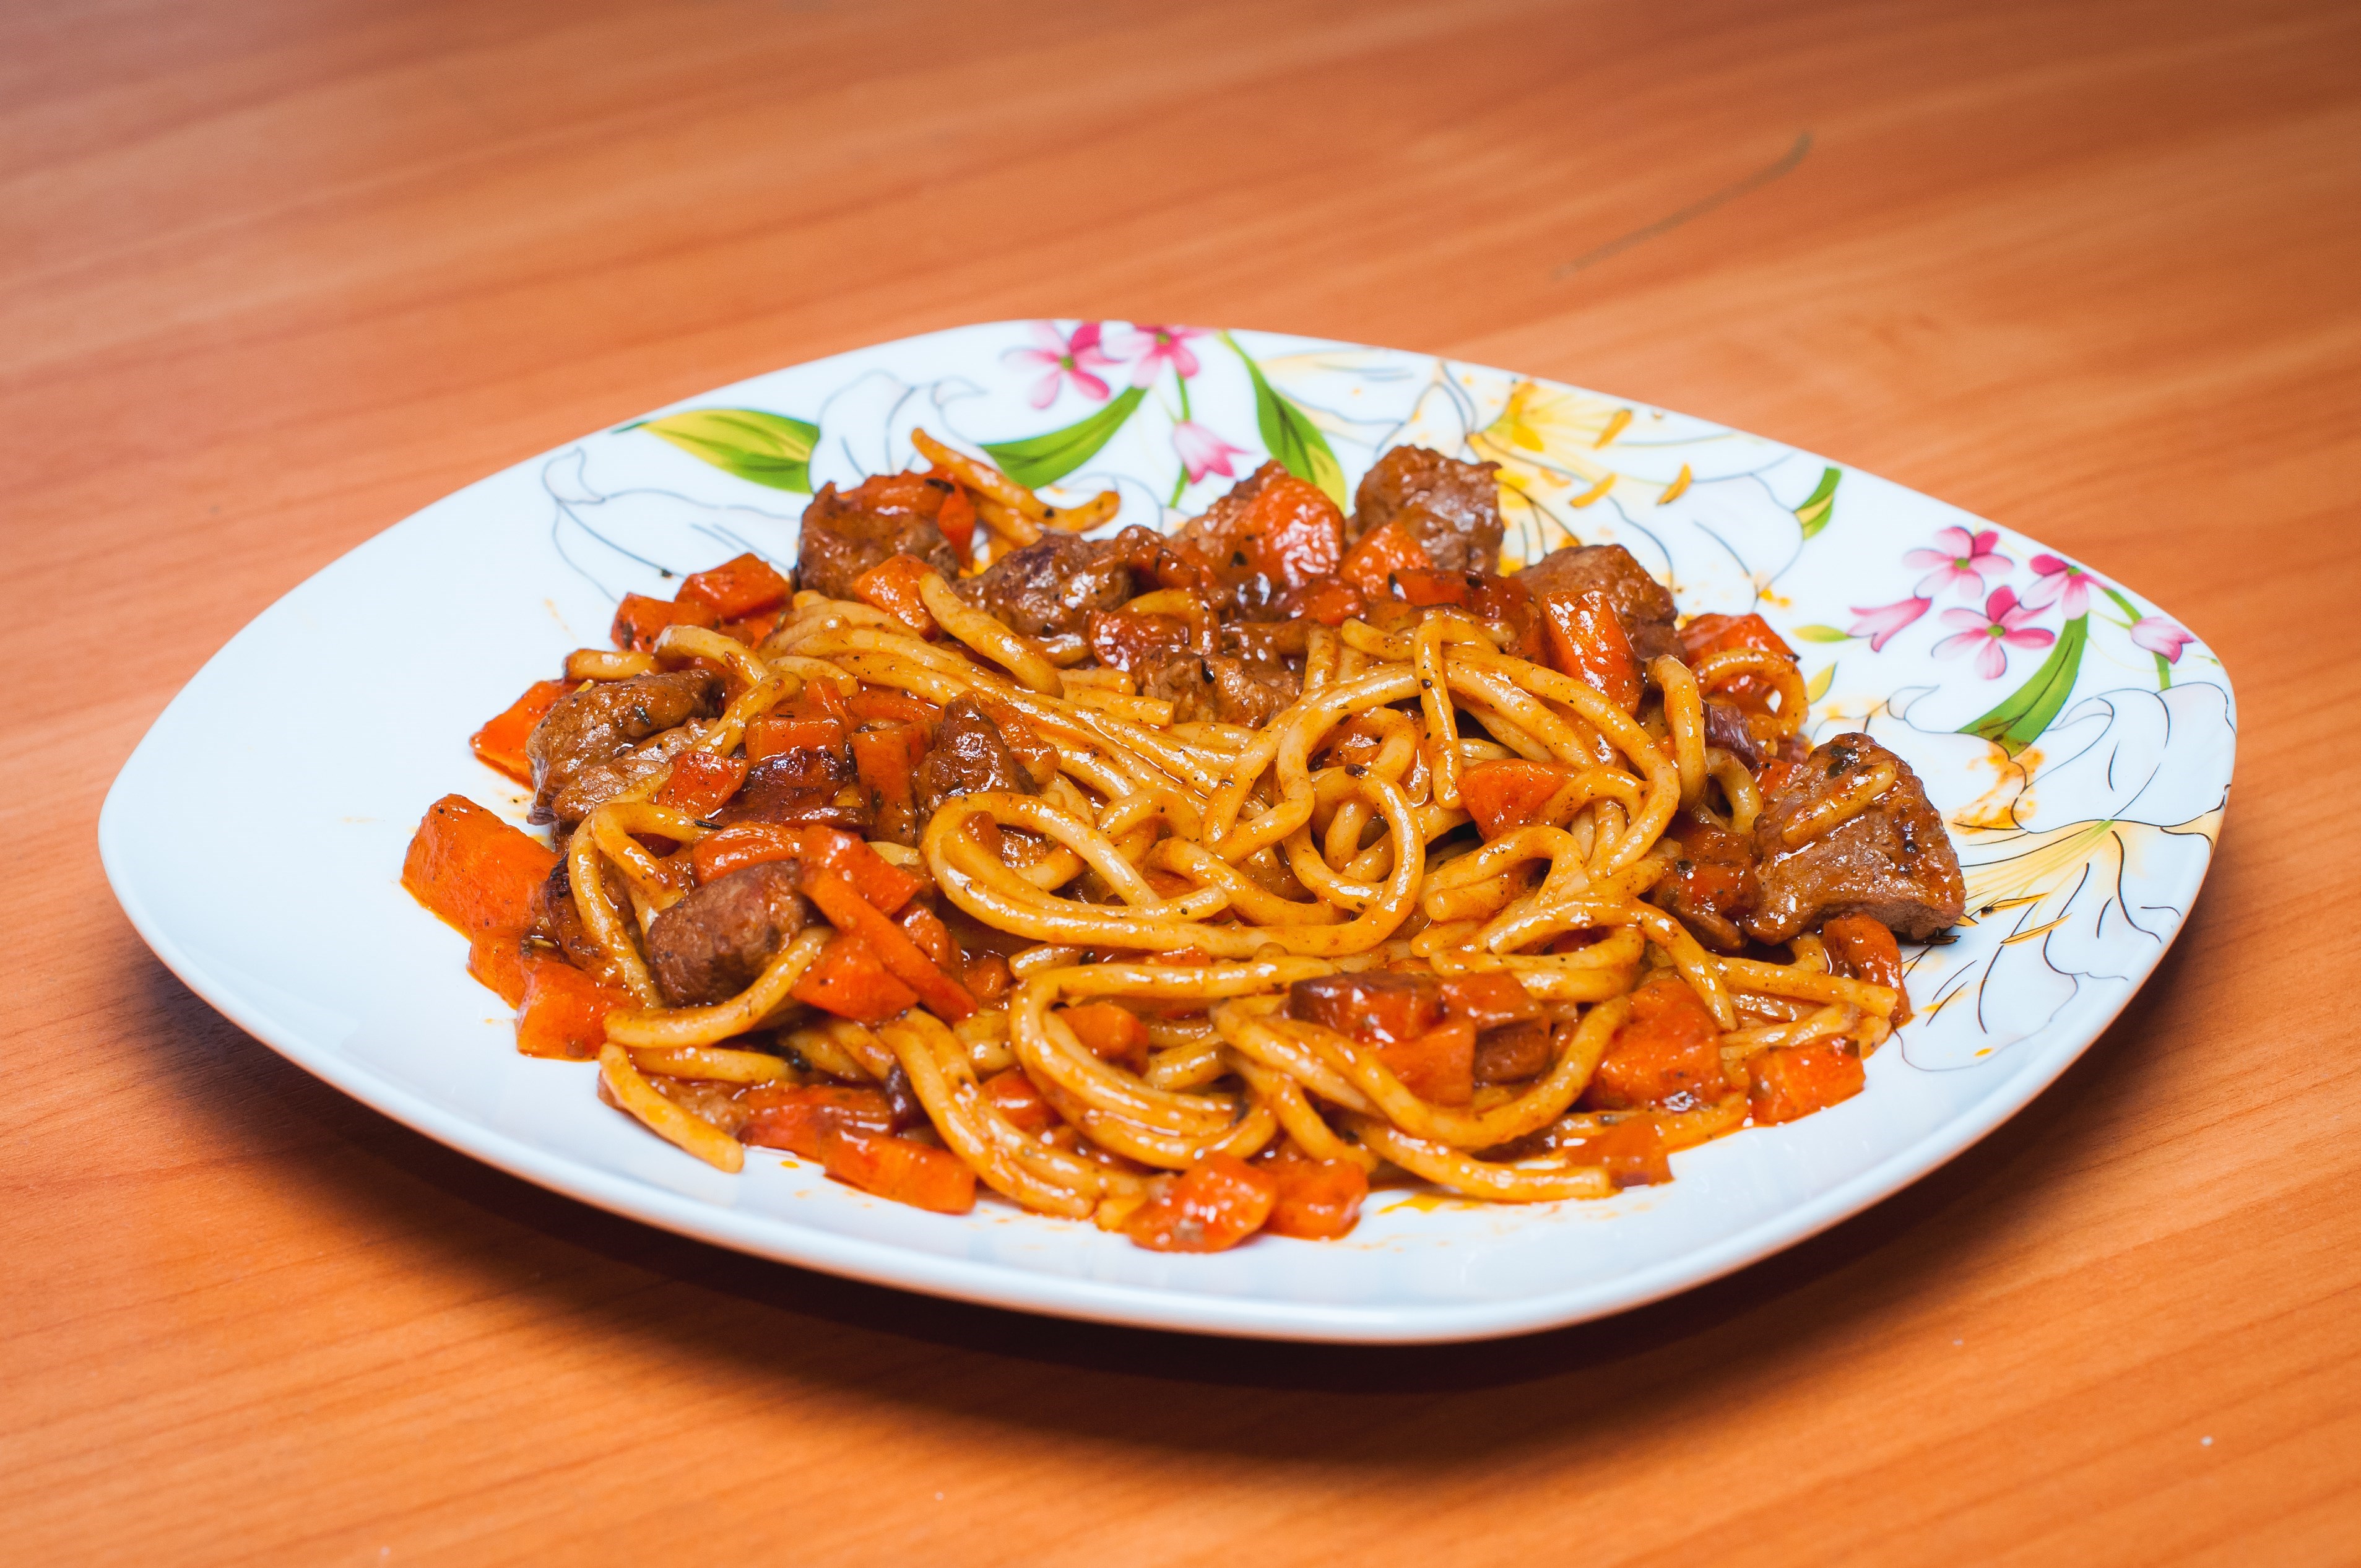 Спагетти со свининой в пряном соусе